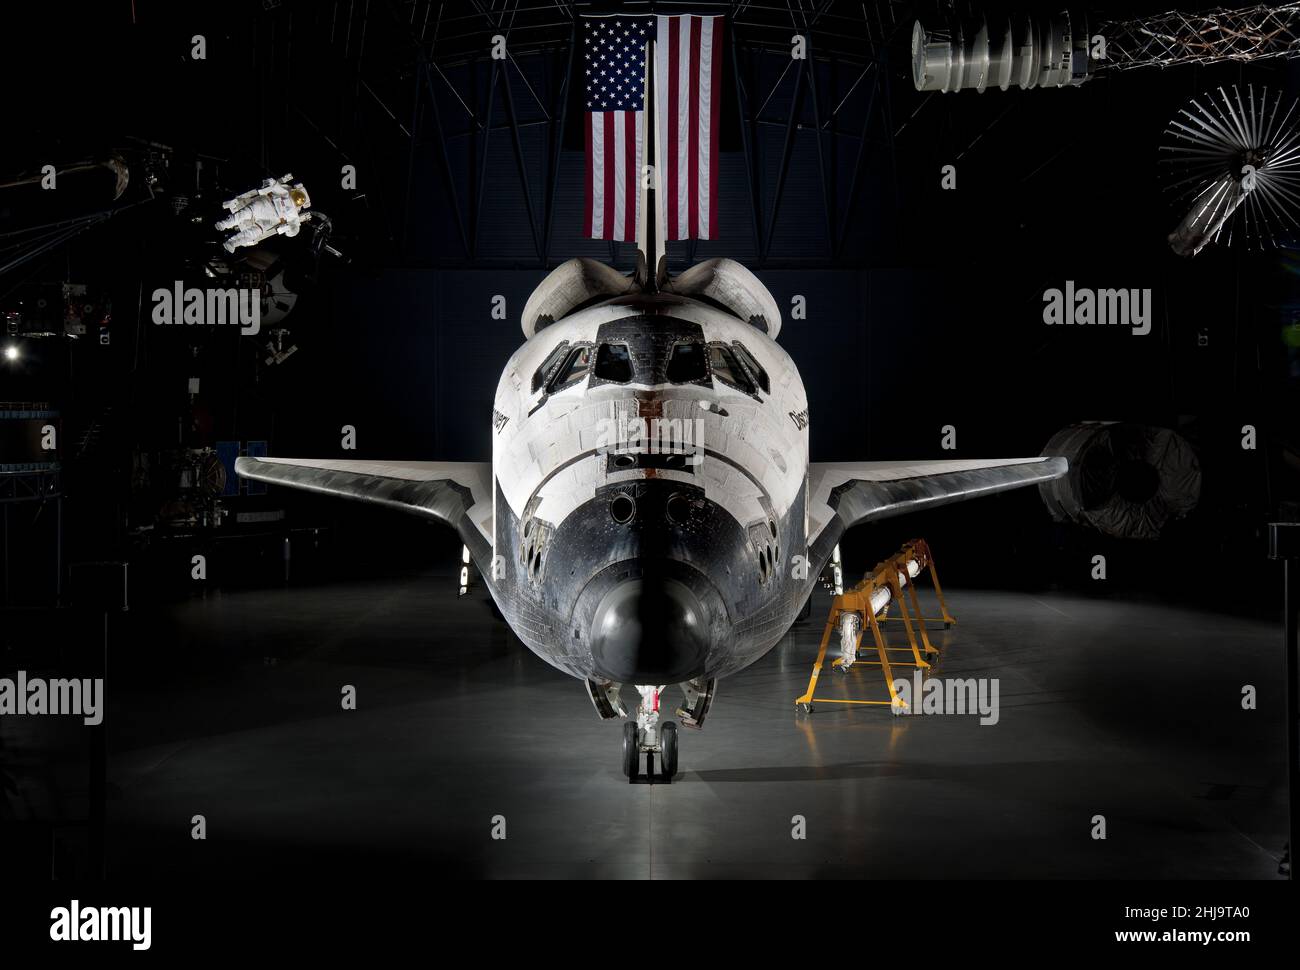 Vorderansicht des Space Shuttle Discovery und des Canadarm- oder Shuttle Remote-Manipulatorarms im National Air and Space Museum, Washington, DC, USA Stockfoto